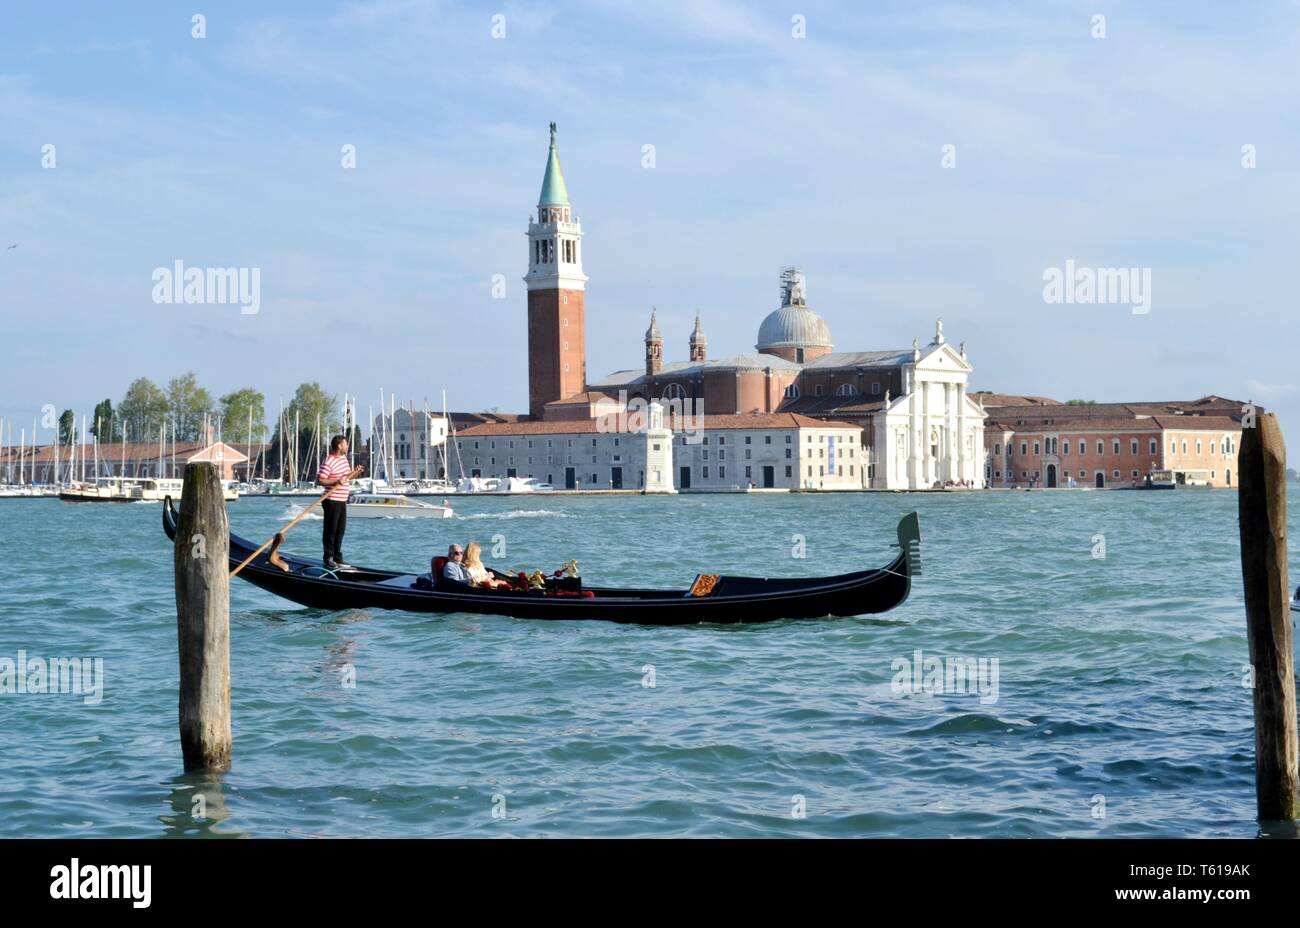 Italie/Venise - 20 Avril 2014 : une vue panoramique sur la lagune de Venise, l'île de San Giorgio Maggiore, à l'un des touristes et gondole gondolier déménagement. Banque D'Images